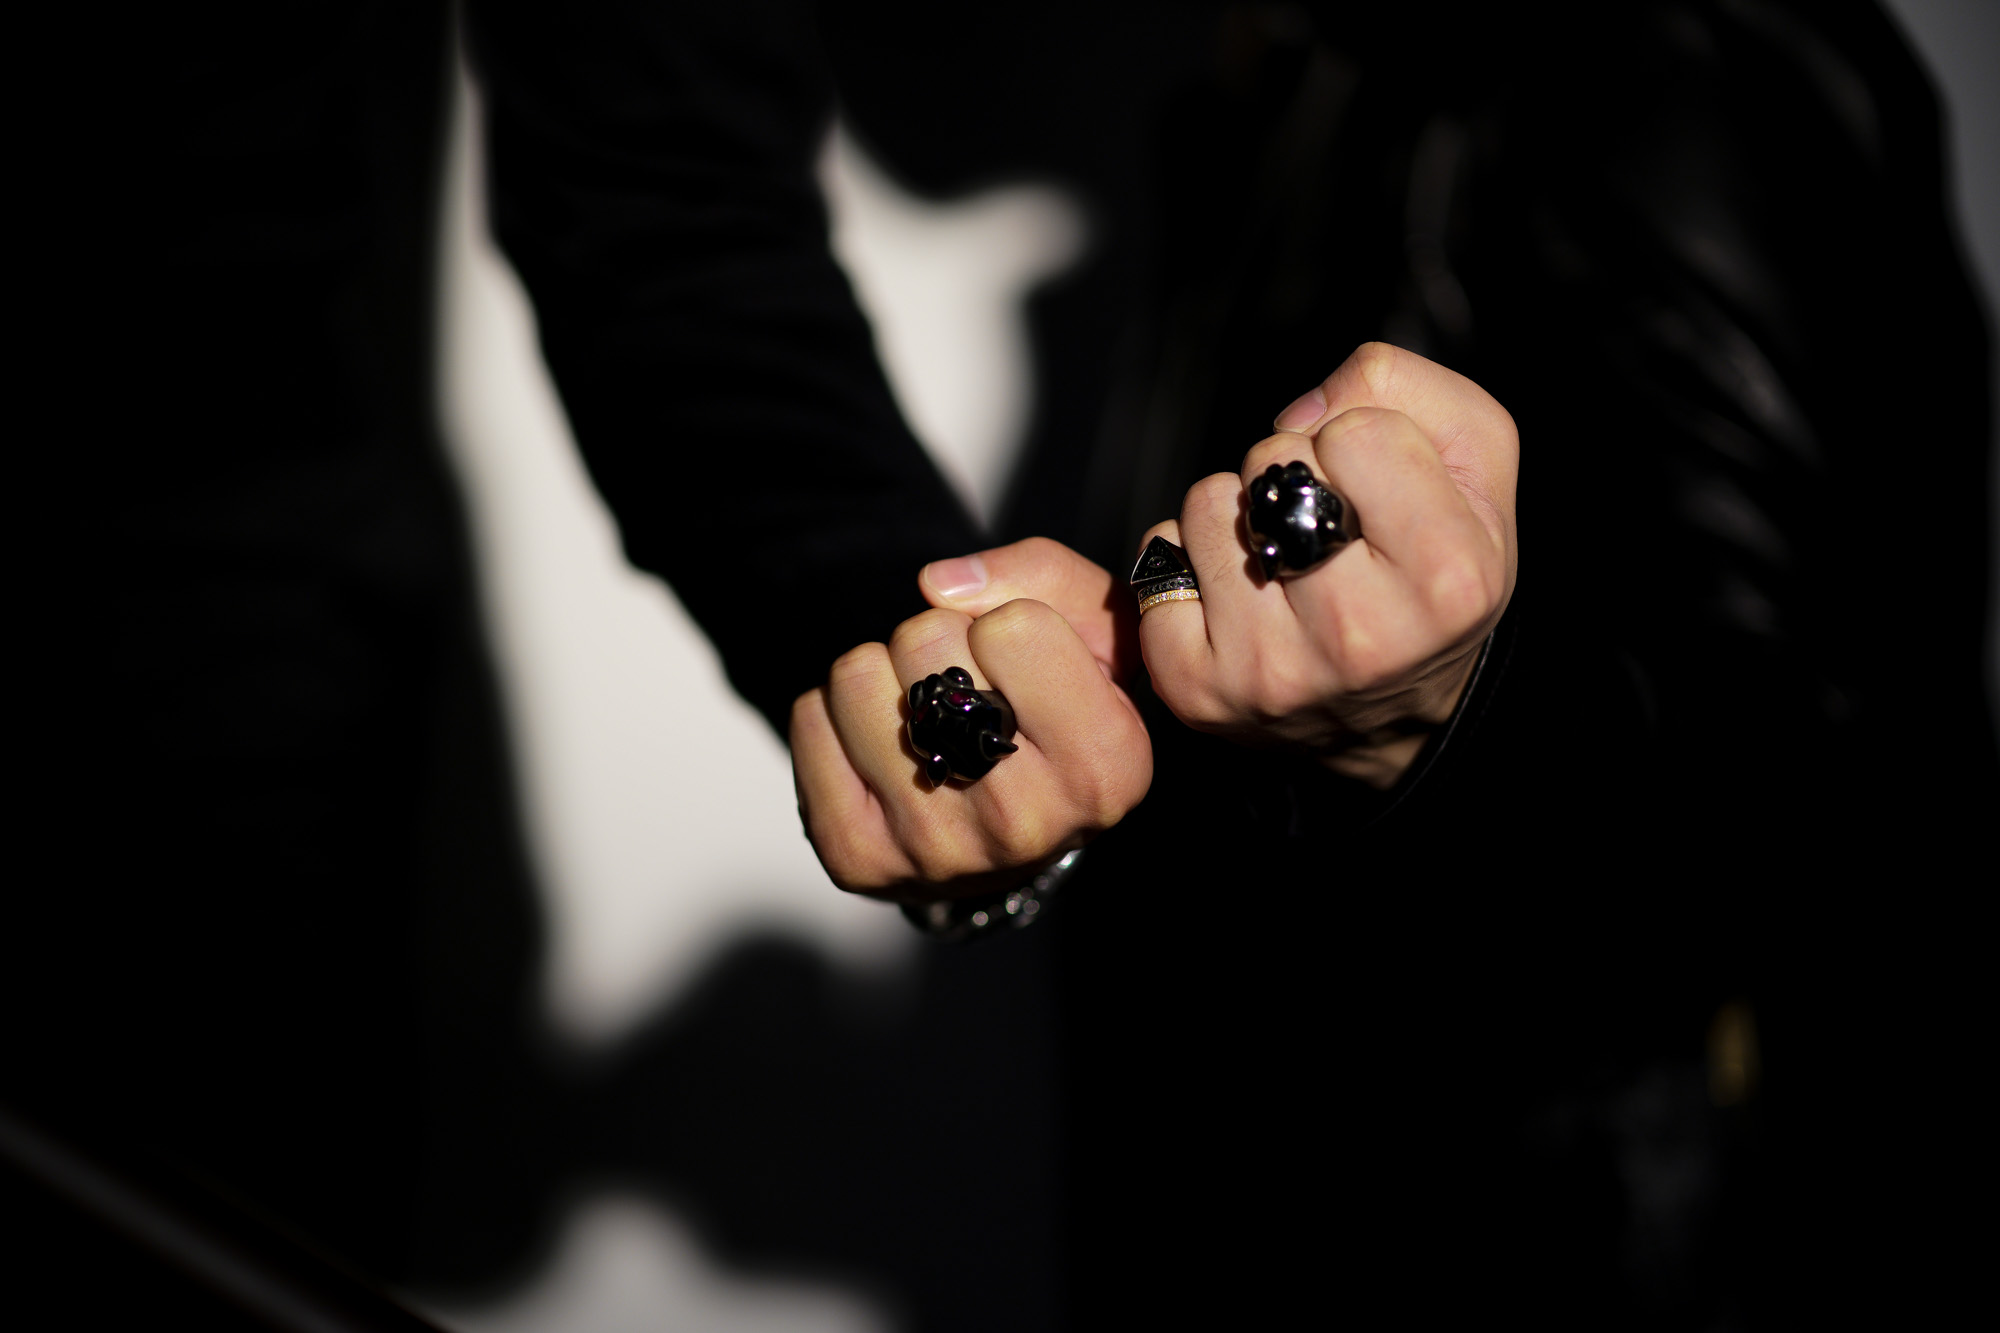 FIXER(フィクサー) BLACK PANTHER RING "RUBY" BLACK RHODIUM(ブラック ロジウム) ブラック パンサーリング ルビー BLACK(ブラック) 【ご予約開始】【2021.9.06(Mon)～2021.9.20(Mon)】 愛知 名古屋 Alto e Diritto altoediritto アルトエデリット リング スペシャルリング